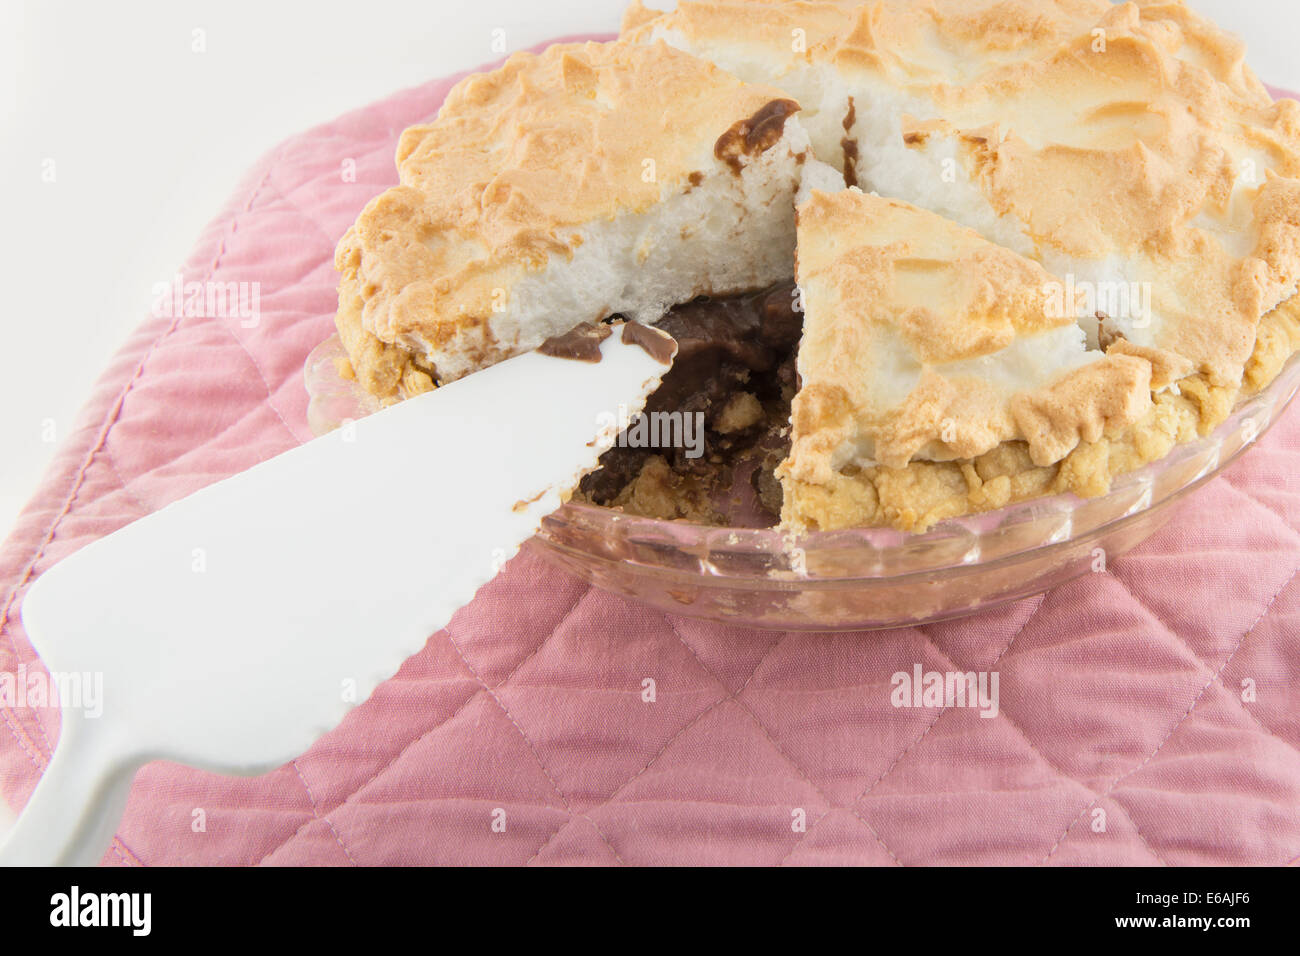 Eine hausgemachte Schokolade Meringue Pie mit einem Stück gegangen, dargestellt mit einer Portion utensil auf einem rosa Mat. Nahaufnahme. USA. Stockfoto